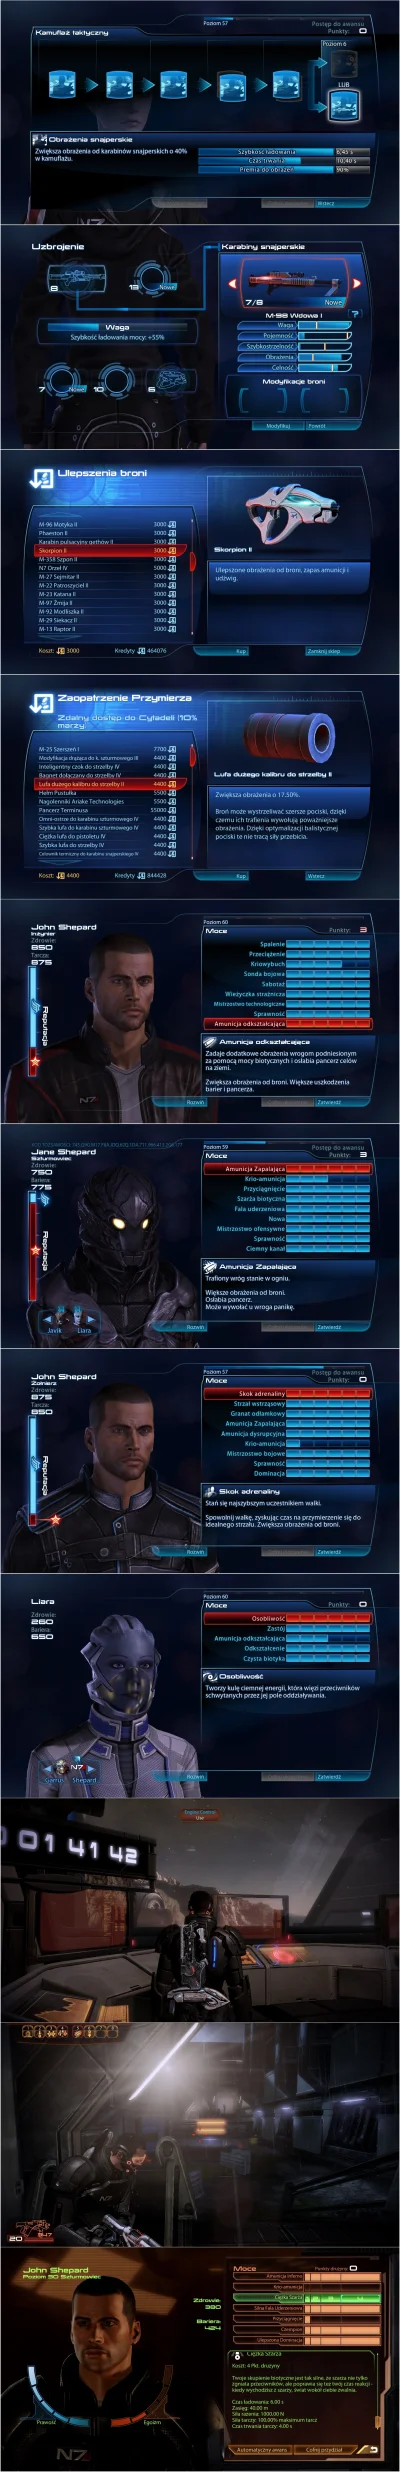 Lisaros - Mass Effect 3 i BioWare

Prolog

Kilka spraw tytułem wstępu:

1. wpis...